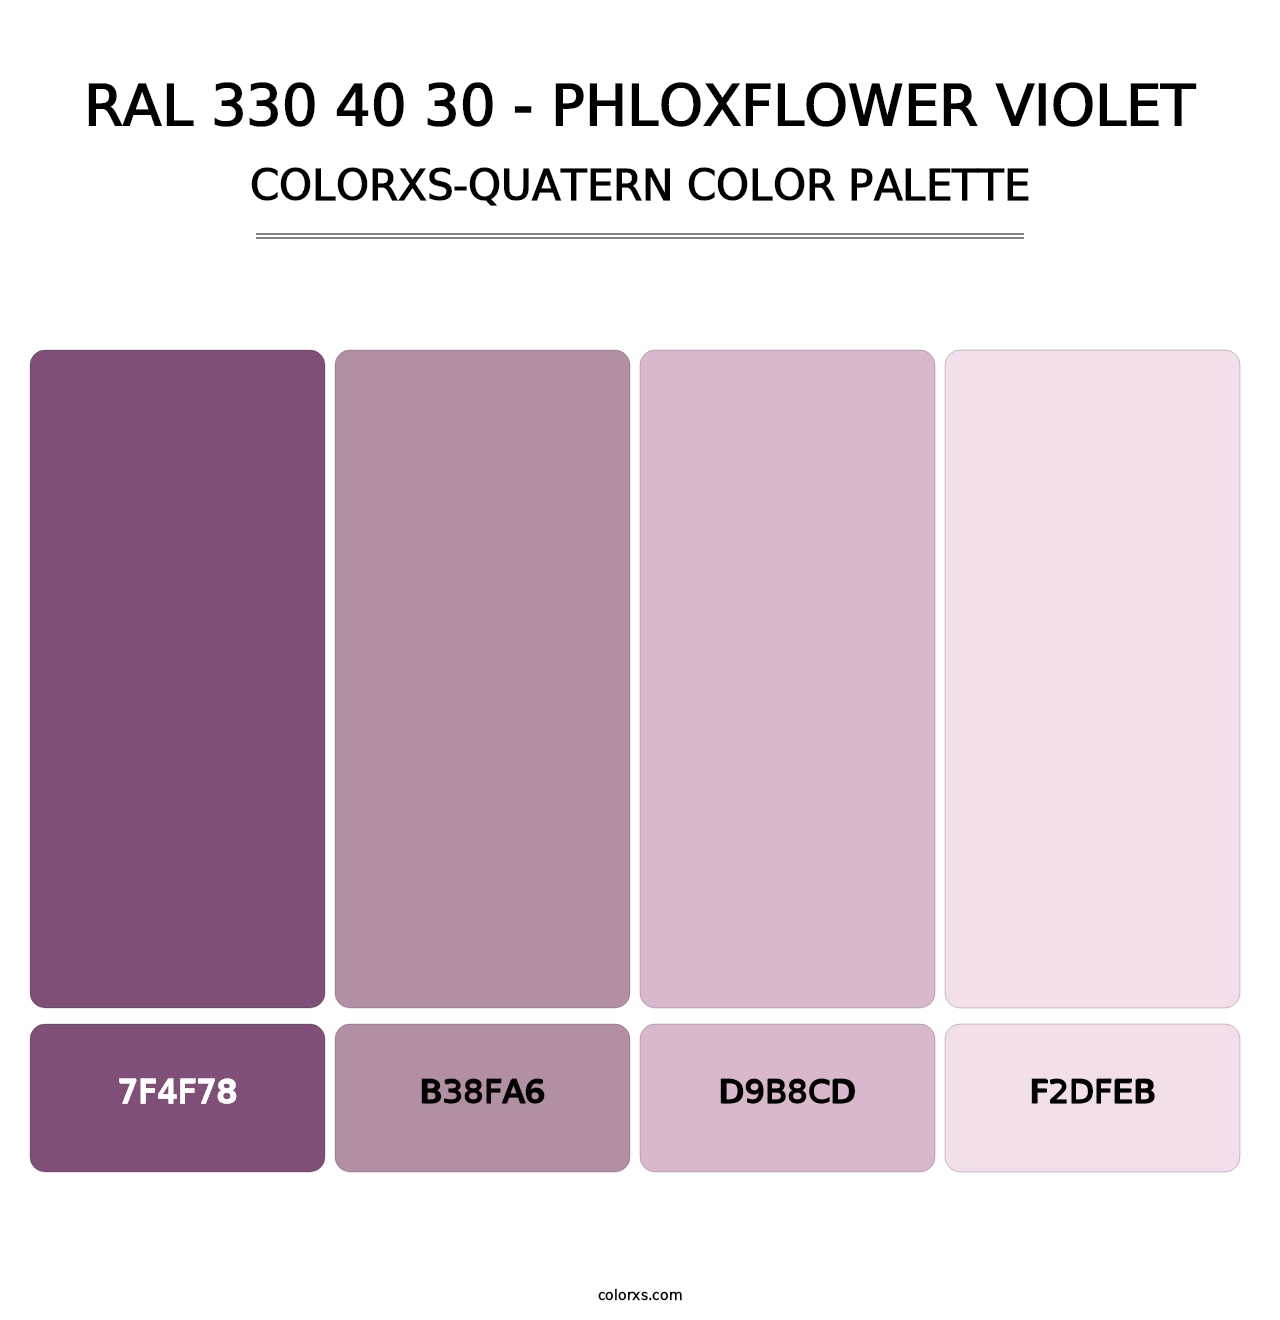 RAL 330 40 30 - Phloxflower Violet - Colorxs Quatern Palette